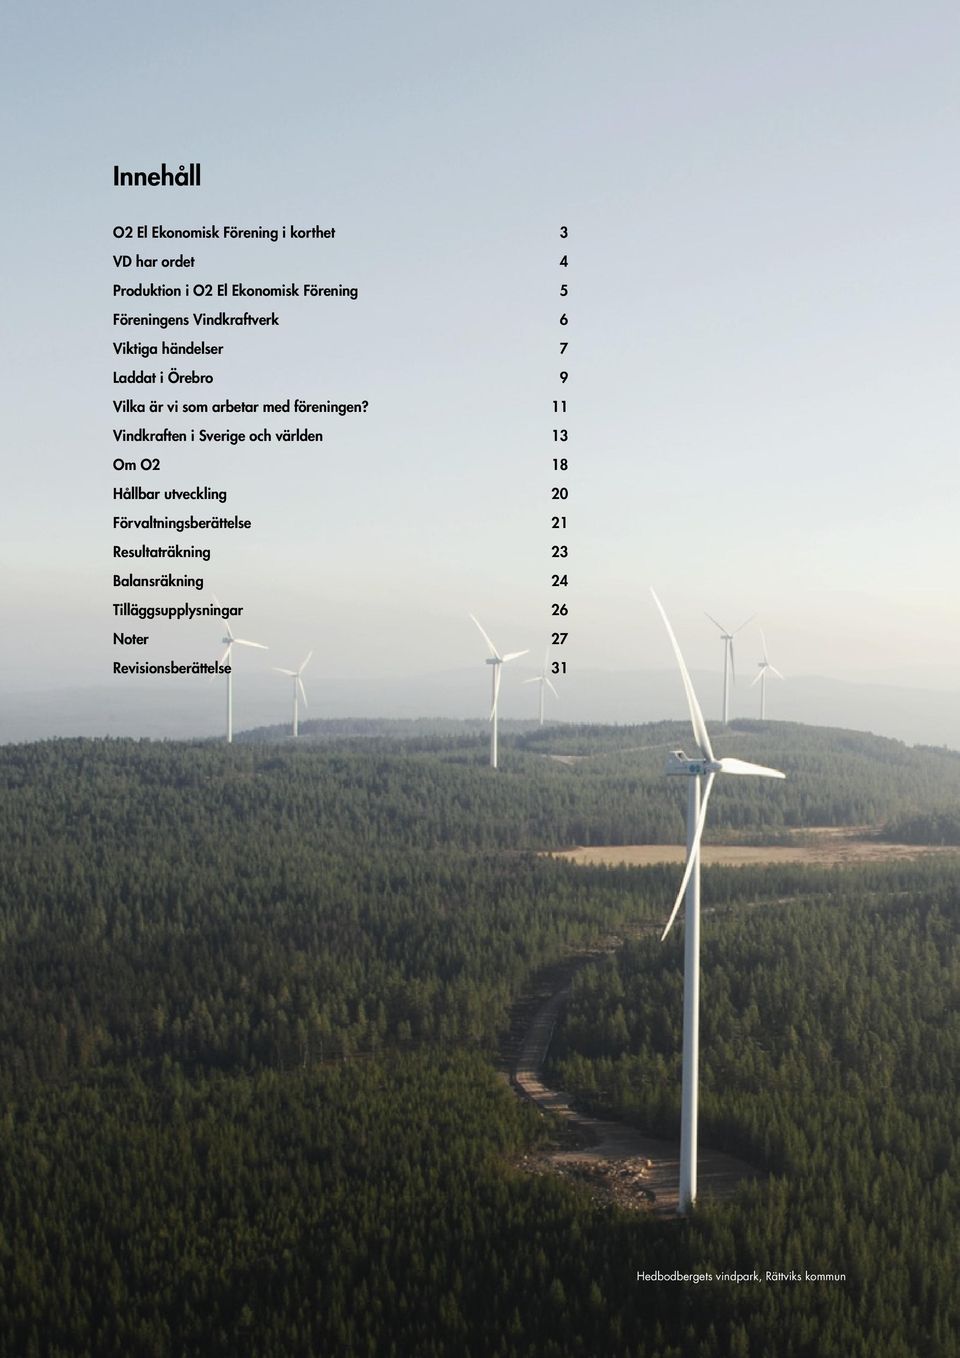 11 Vindkraften i Sverige och världen 13 Om O2 18 Hållbar utveckling 20 Förvaltningsberättelse 21